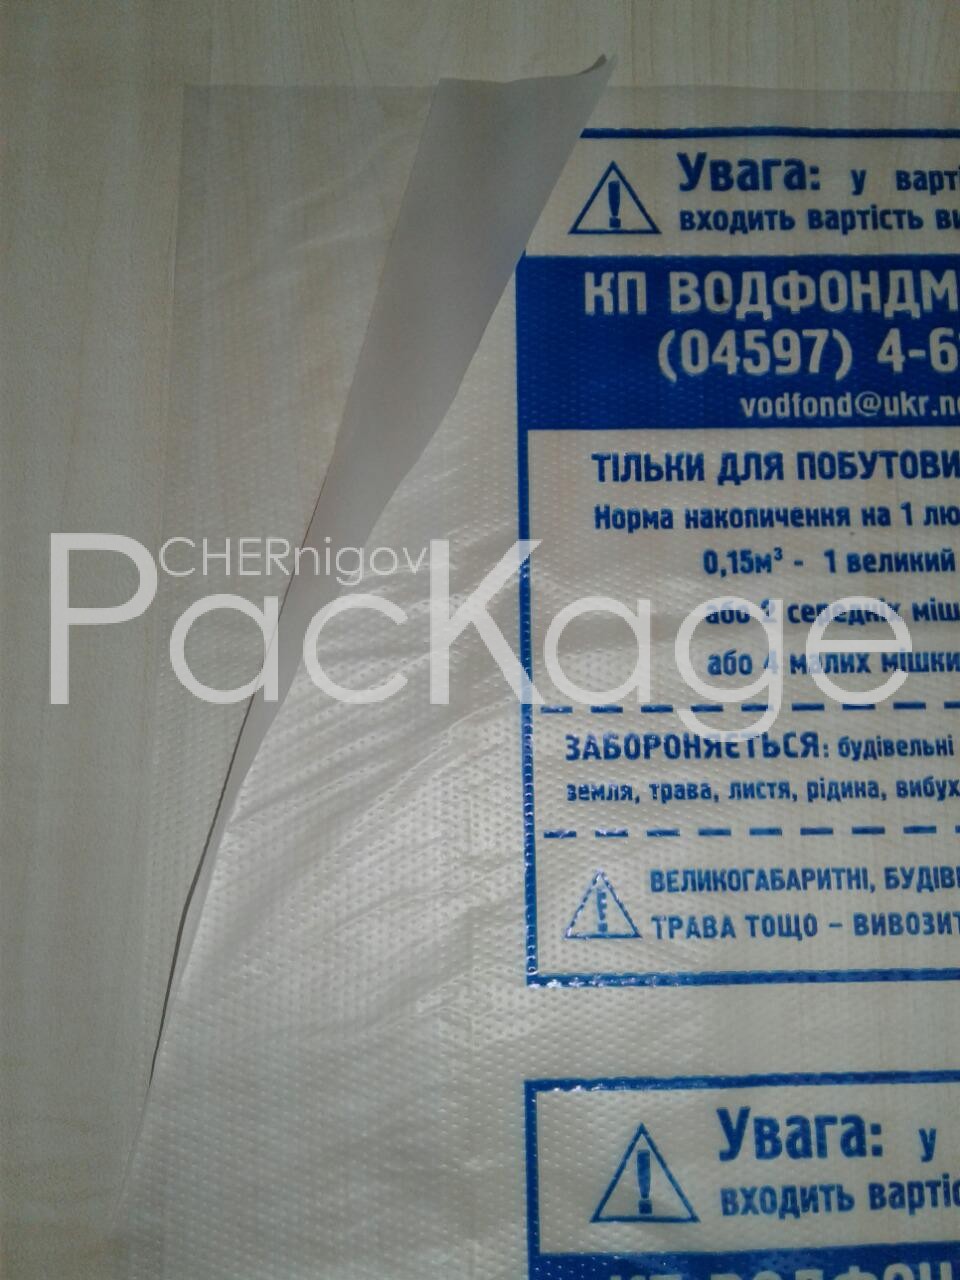 Полиэтиленовый рукав как упаковочный материал Chernigov Package - Фото пнд 30 мкм 35х48_ф7